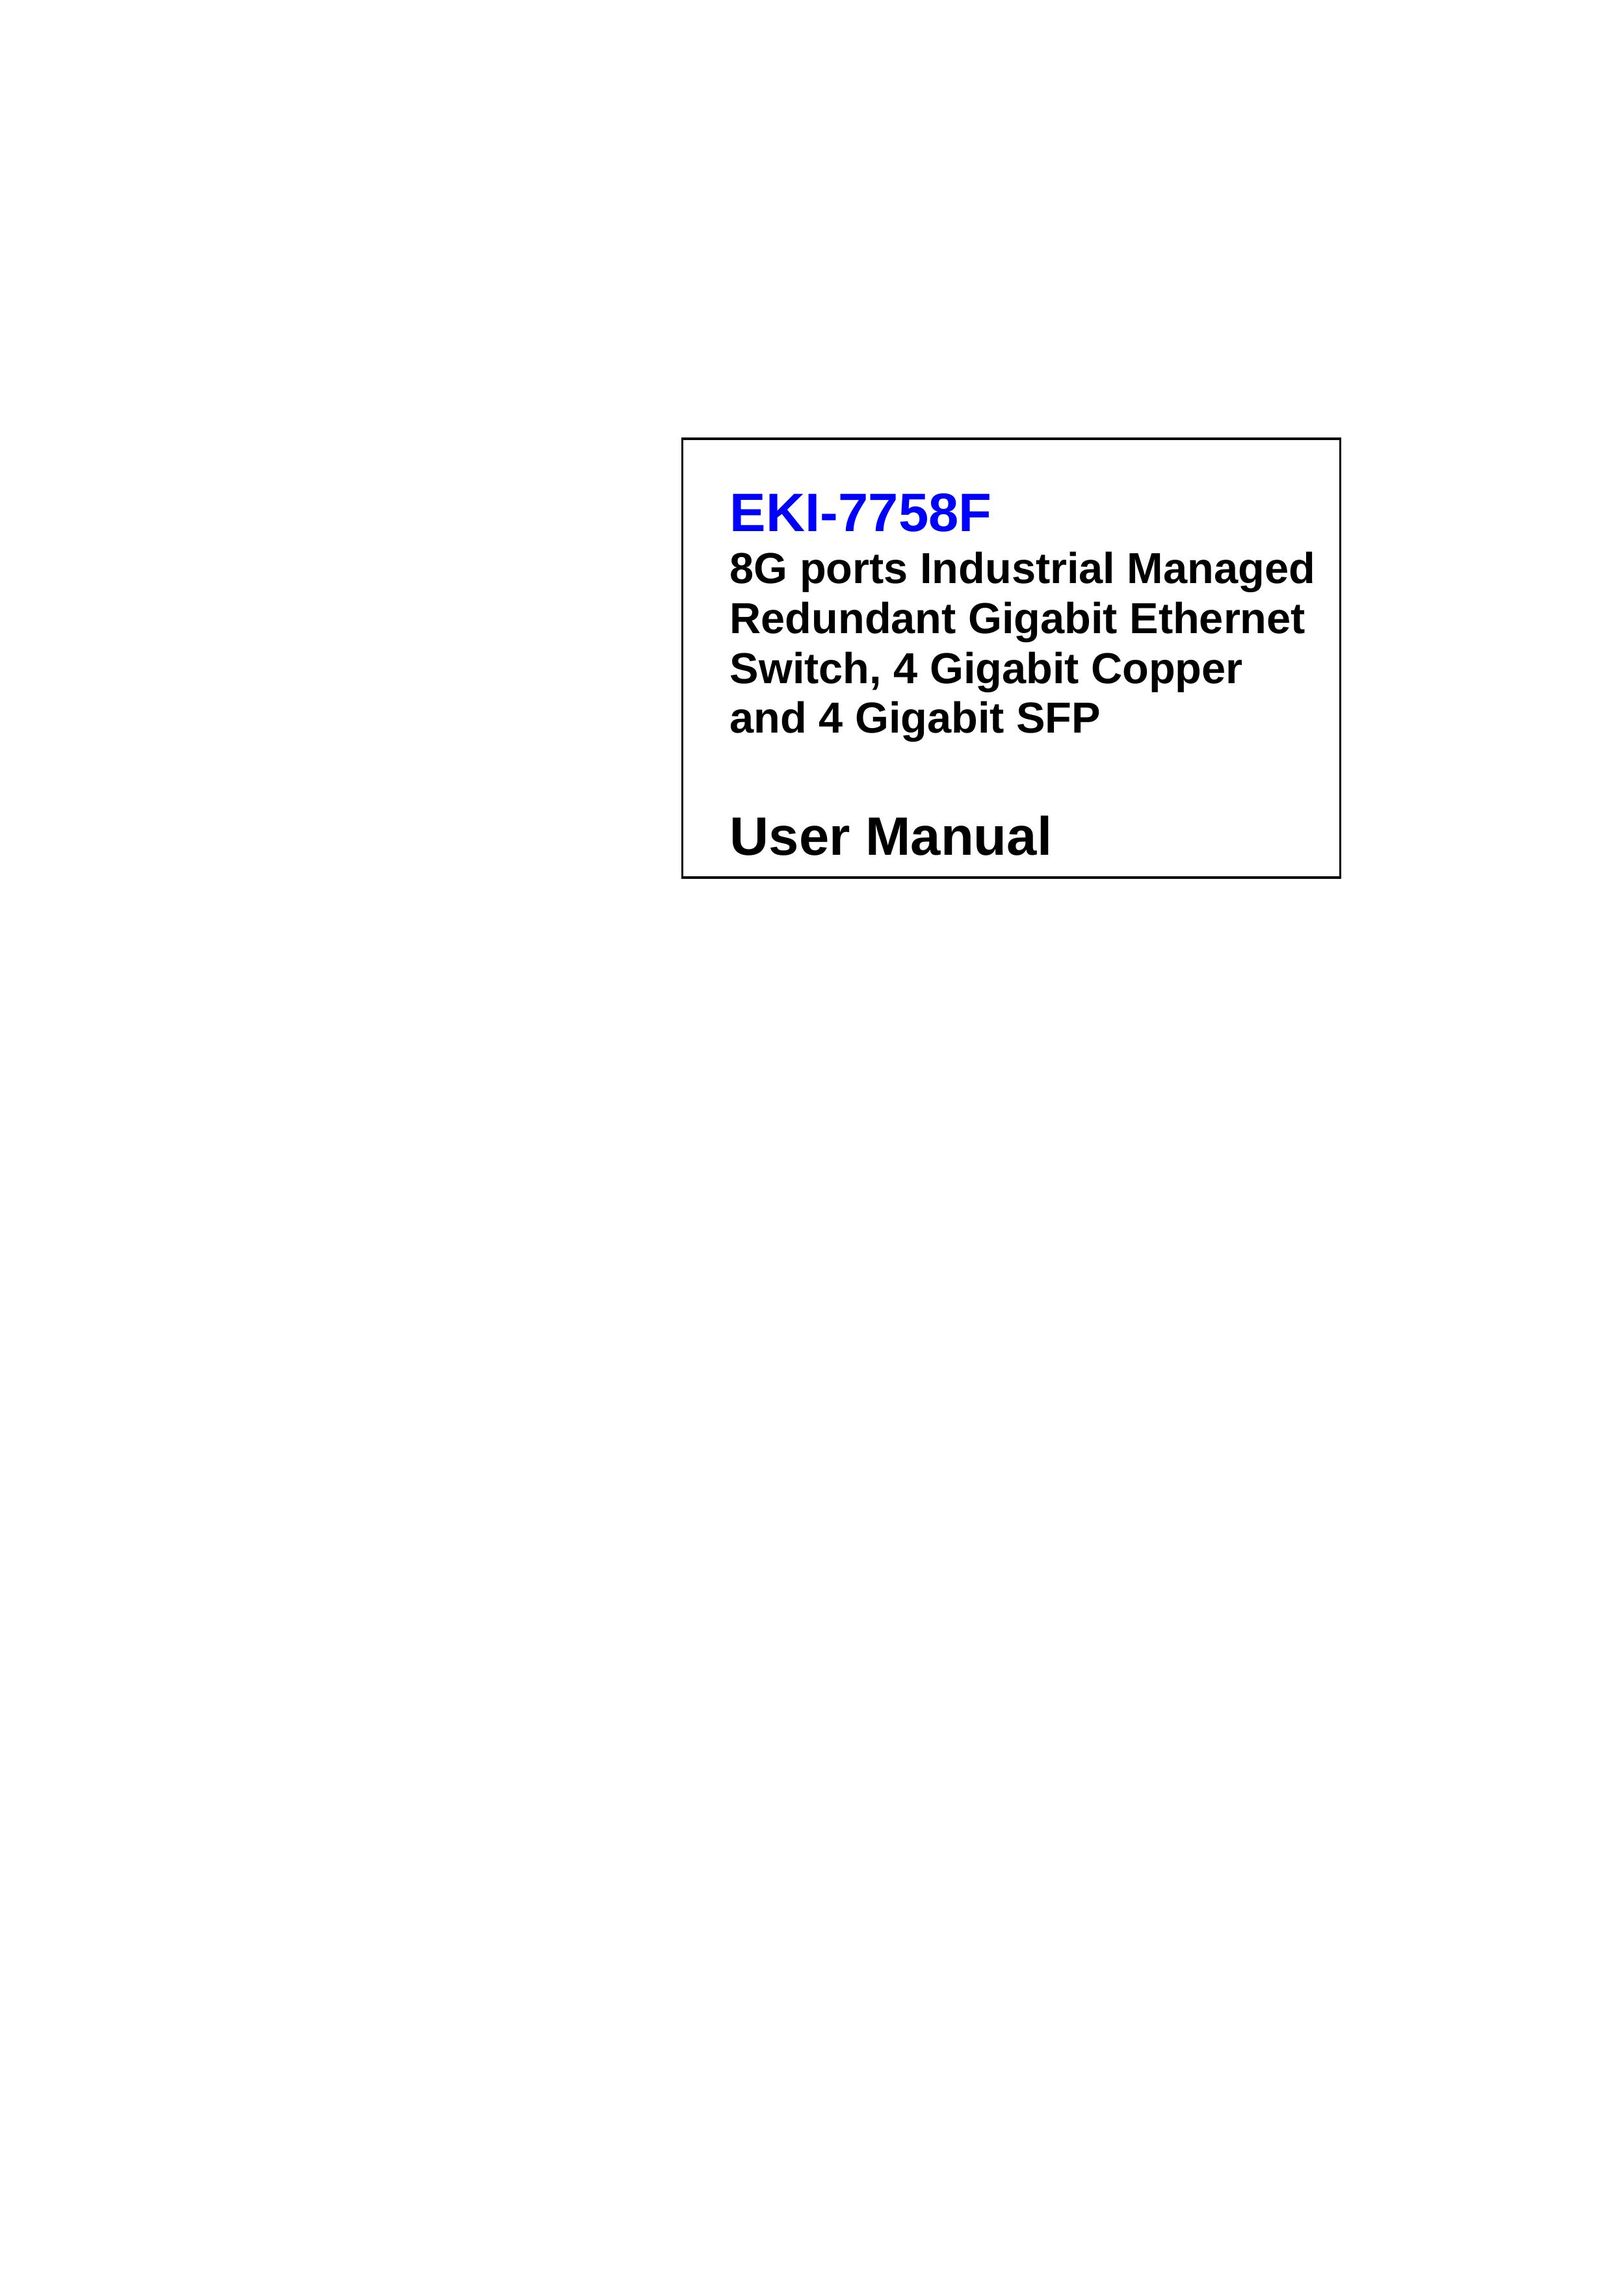 Advantech EKI-7758F Switch User Manual